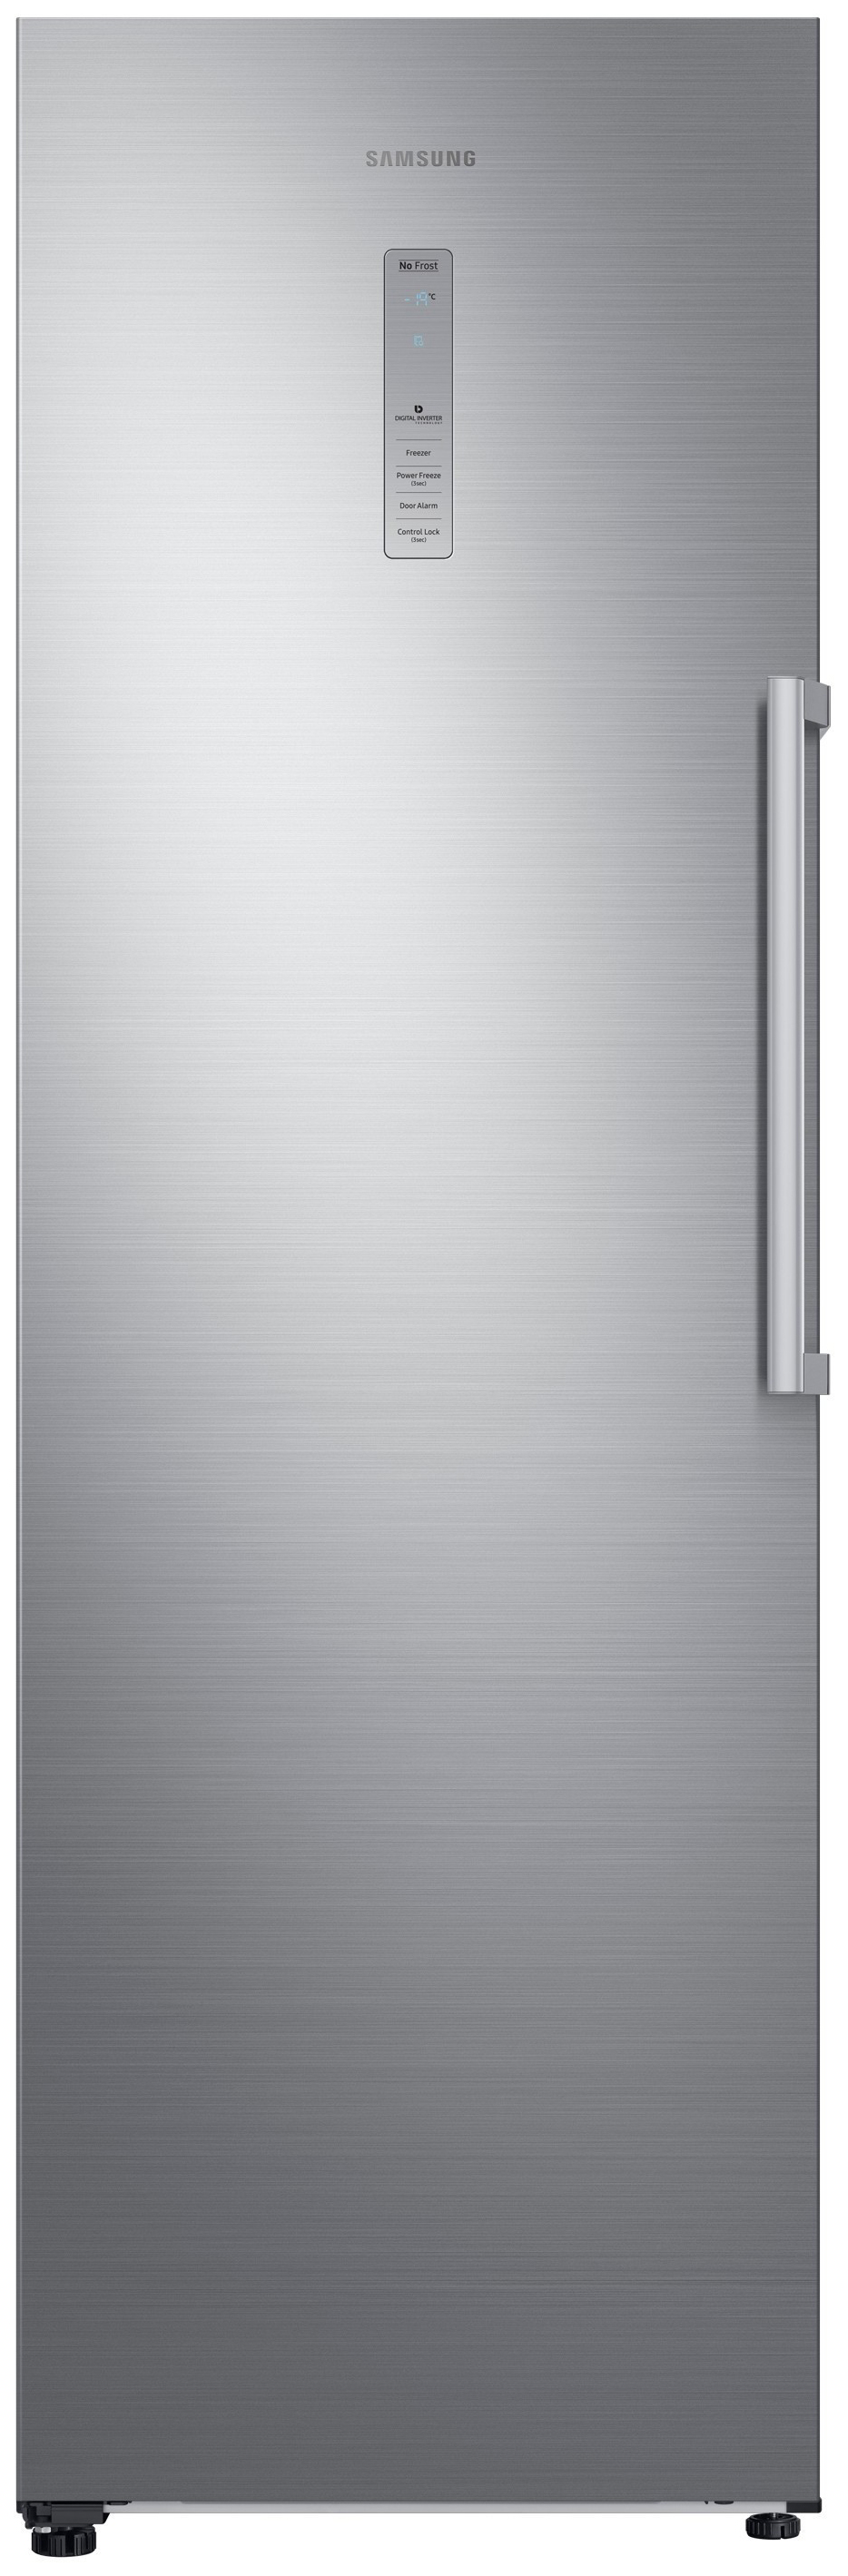 Холодильник Samsung RR 39 M 7140SAWT серебристый касса играем вместе три кота с набором продуктов свет звук арт zy785622 r